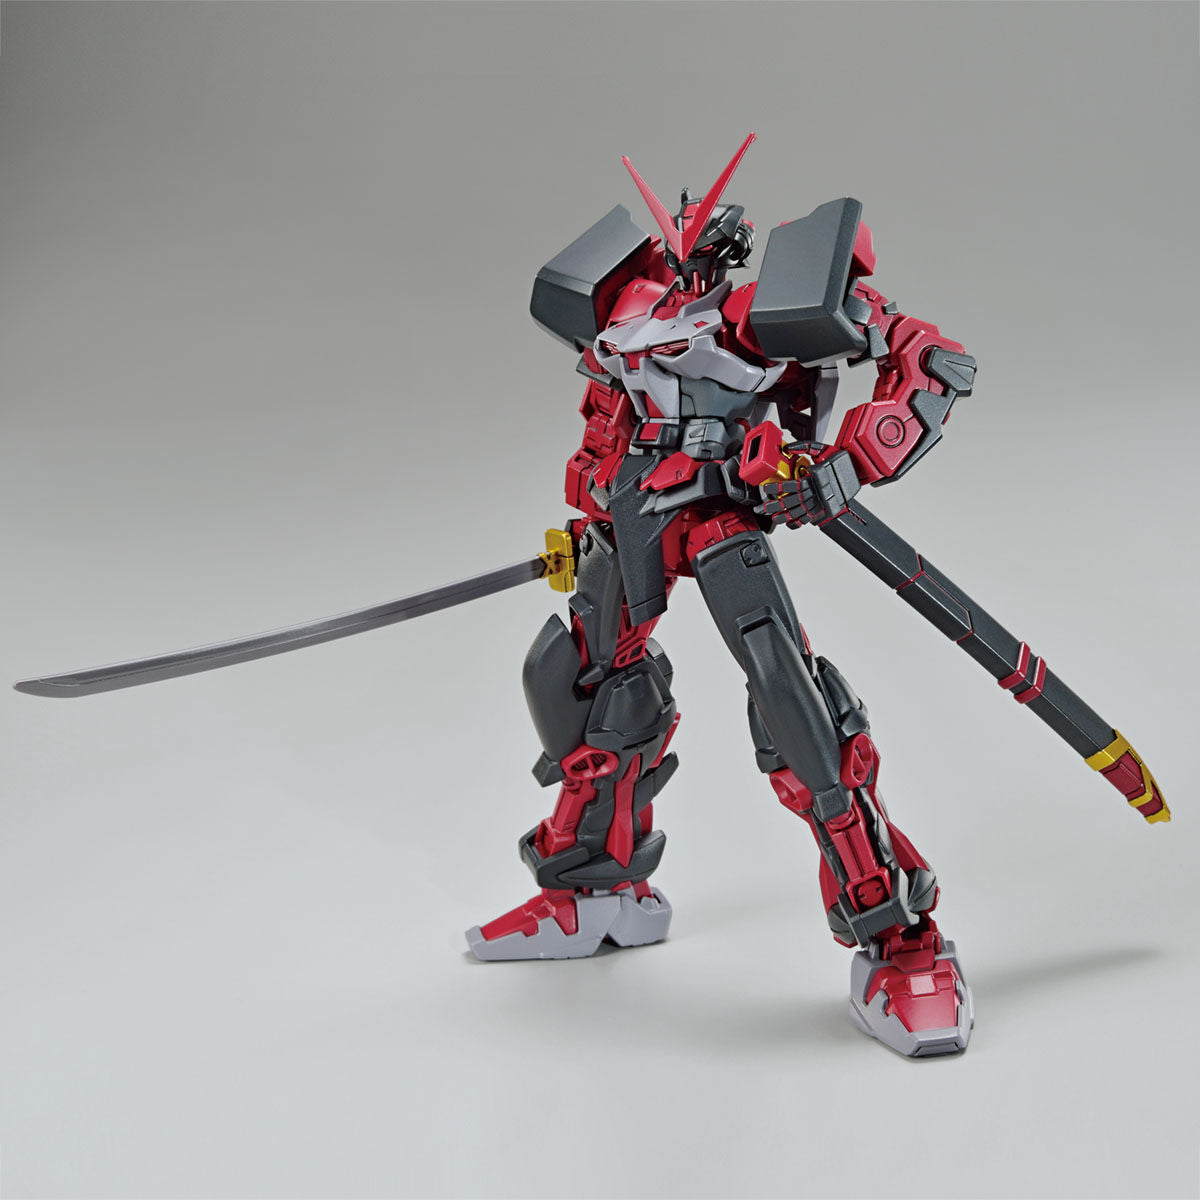 HG Gundam Astray Red Frame Inversion - P-Bandai 1/144